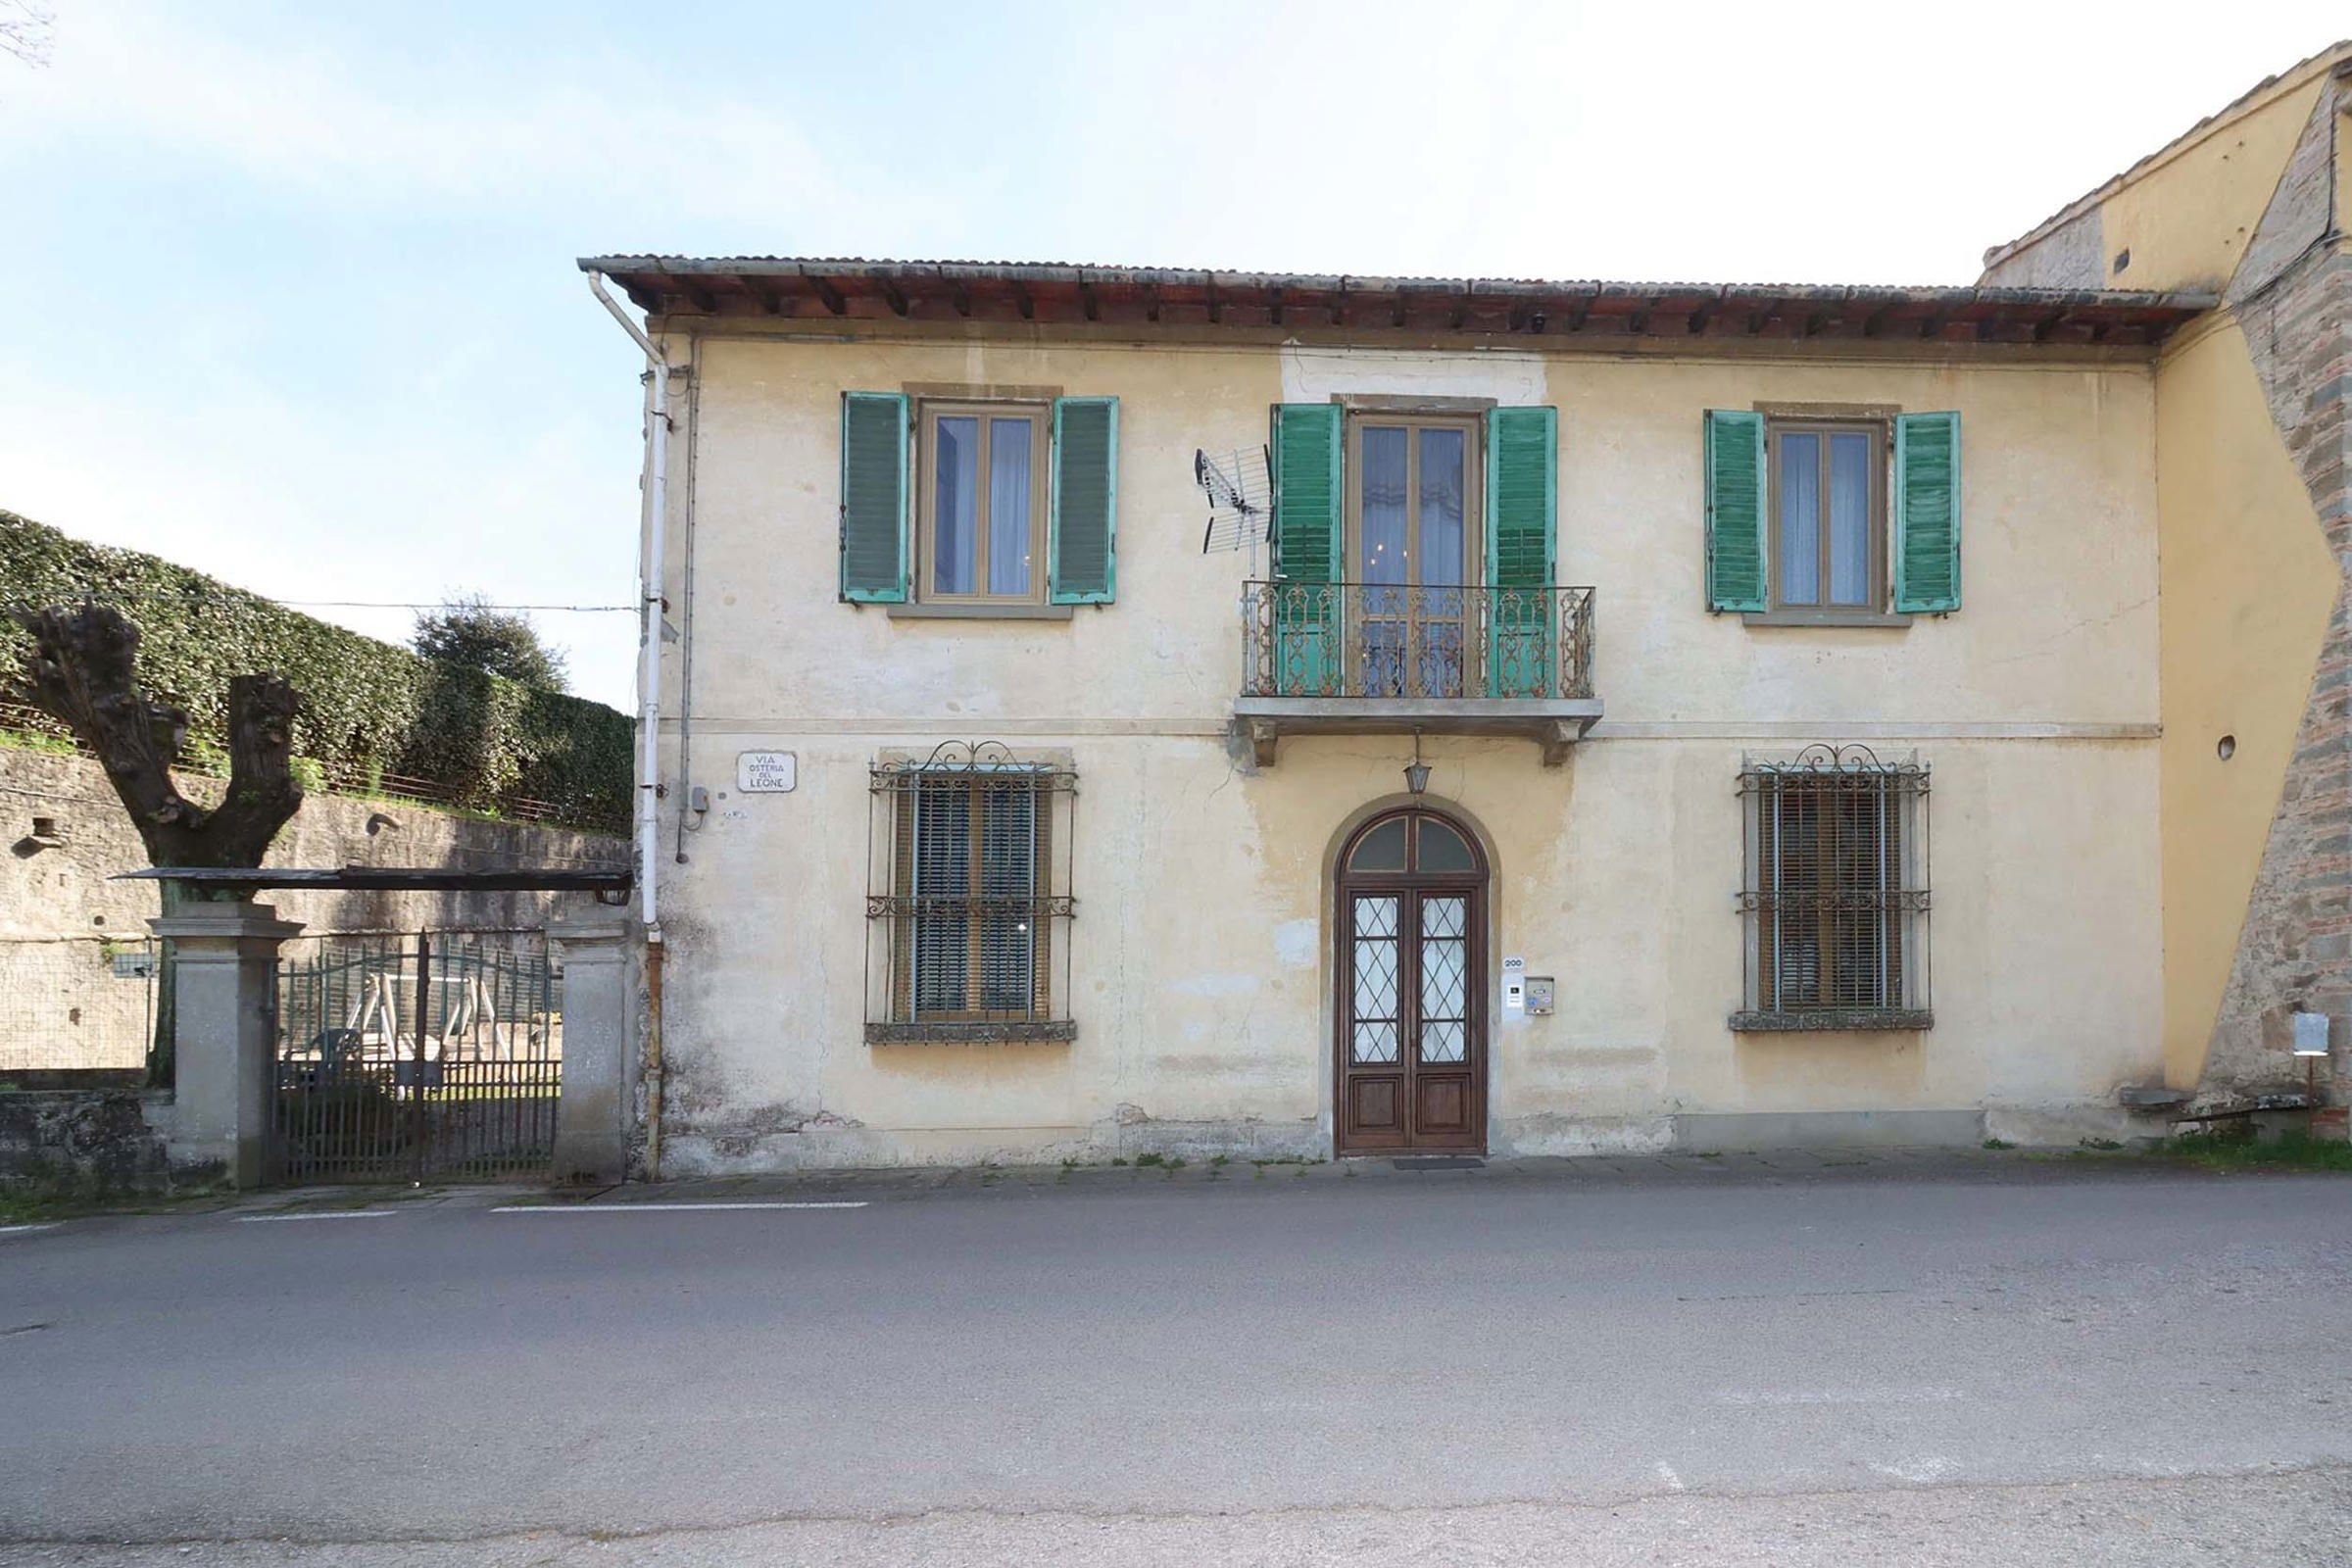 Villa Bifamiliare in vendita a Lastra a Signa, 9 locali, prezzo € 370.000 | PortaleAgenzieImmobiliari.it